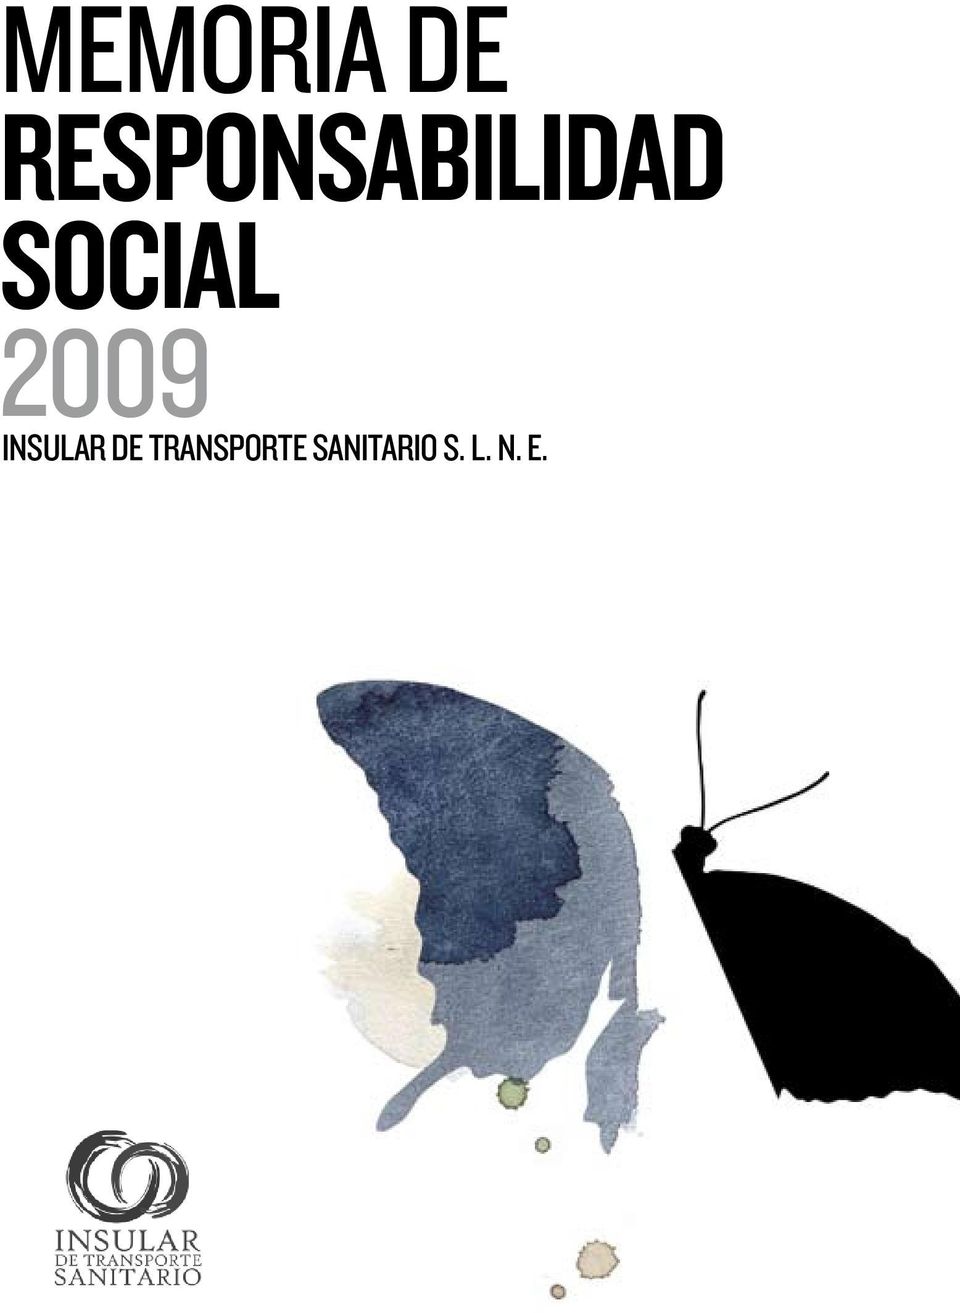 SOCIAL 2009 INSULAR